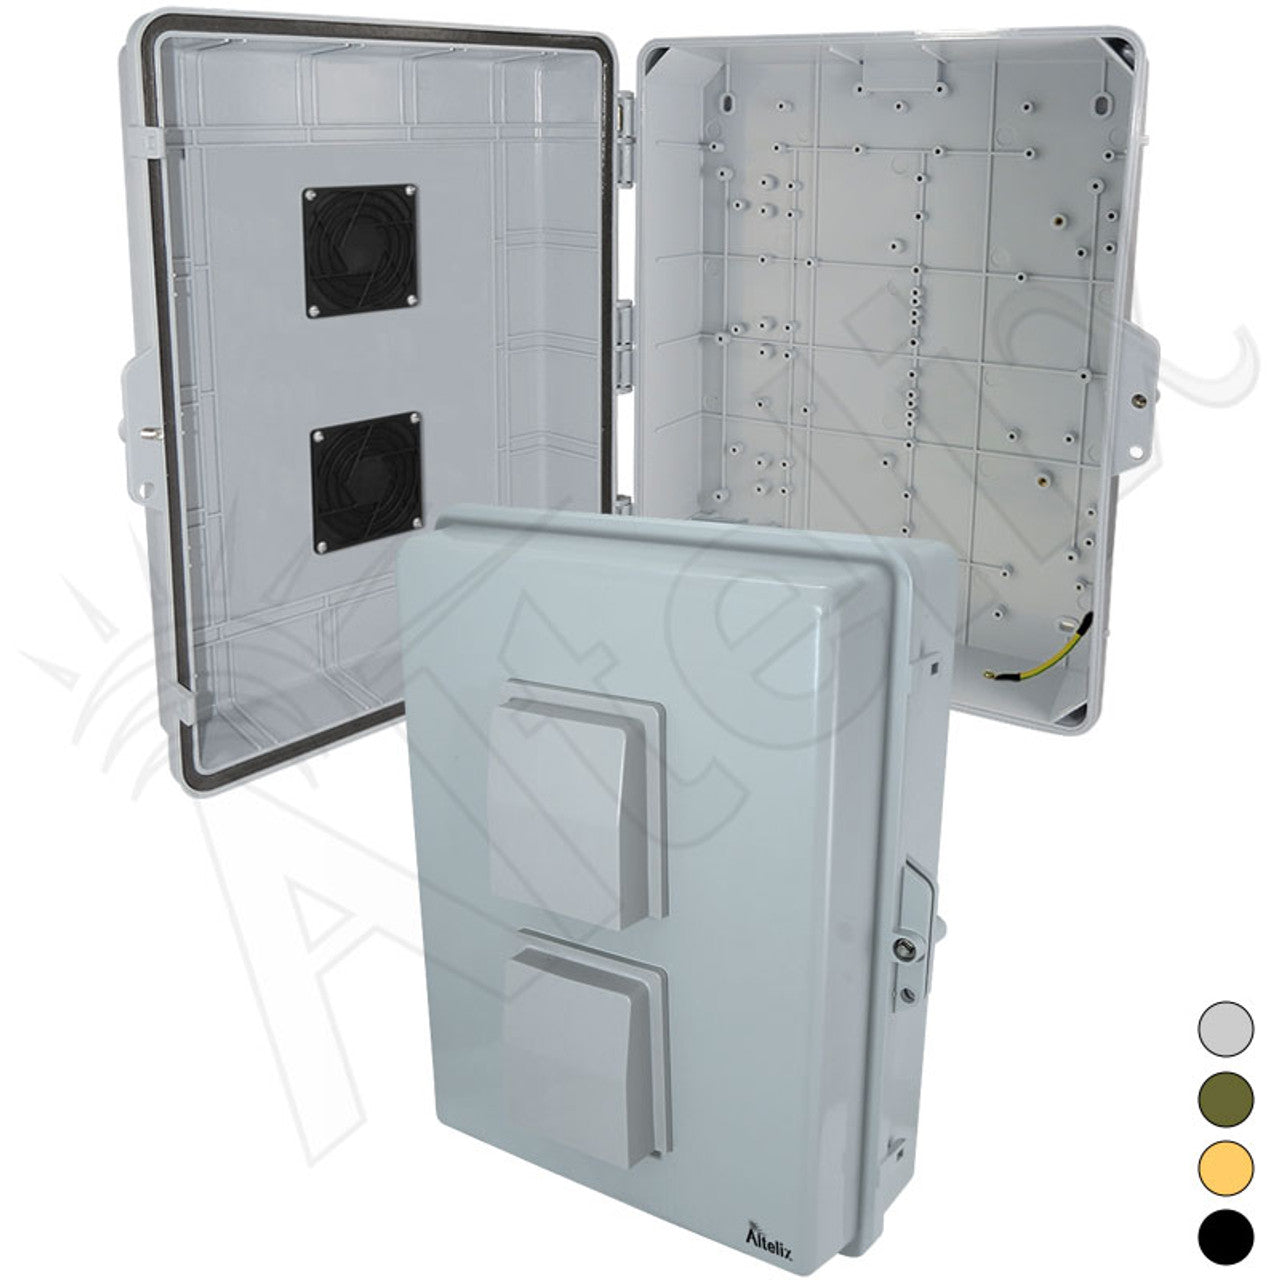 Altelix 17x14x6 PC + ABS Weatherproof Vented NEMA Enclosure with Hinged Door-1